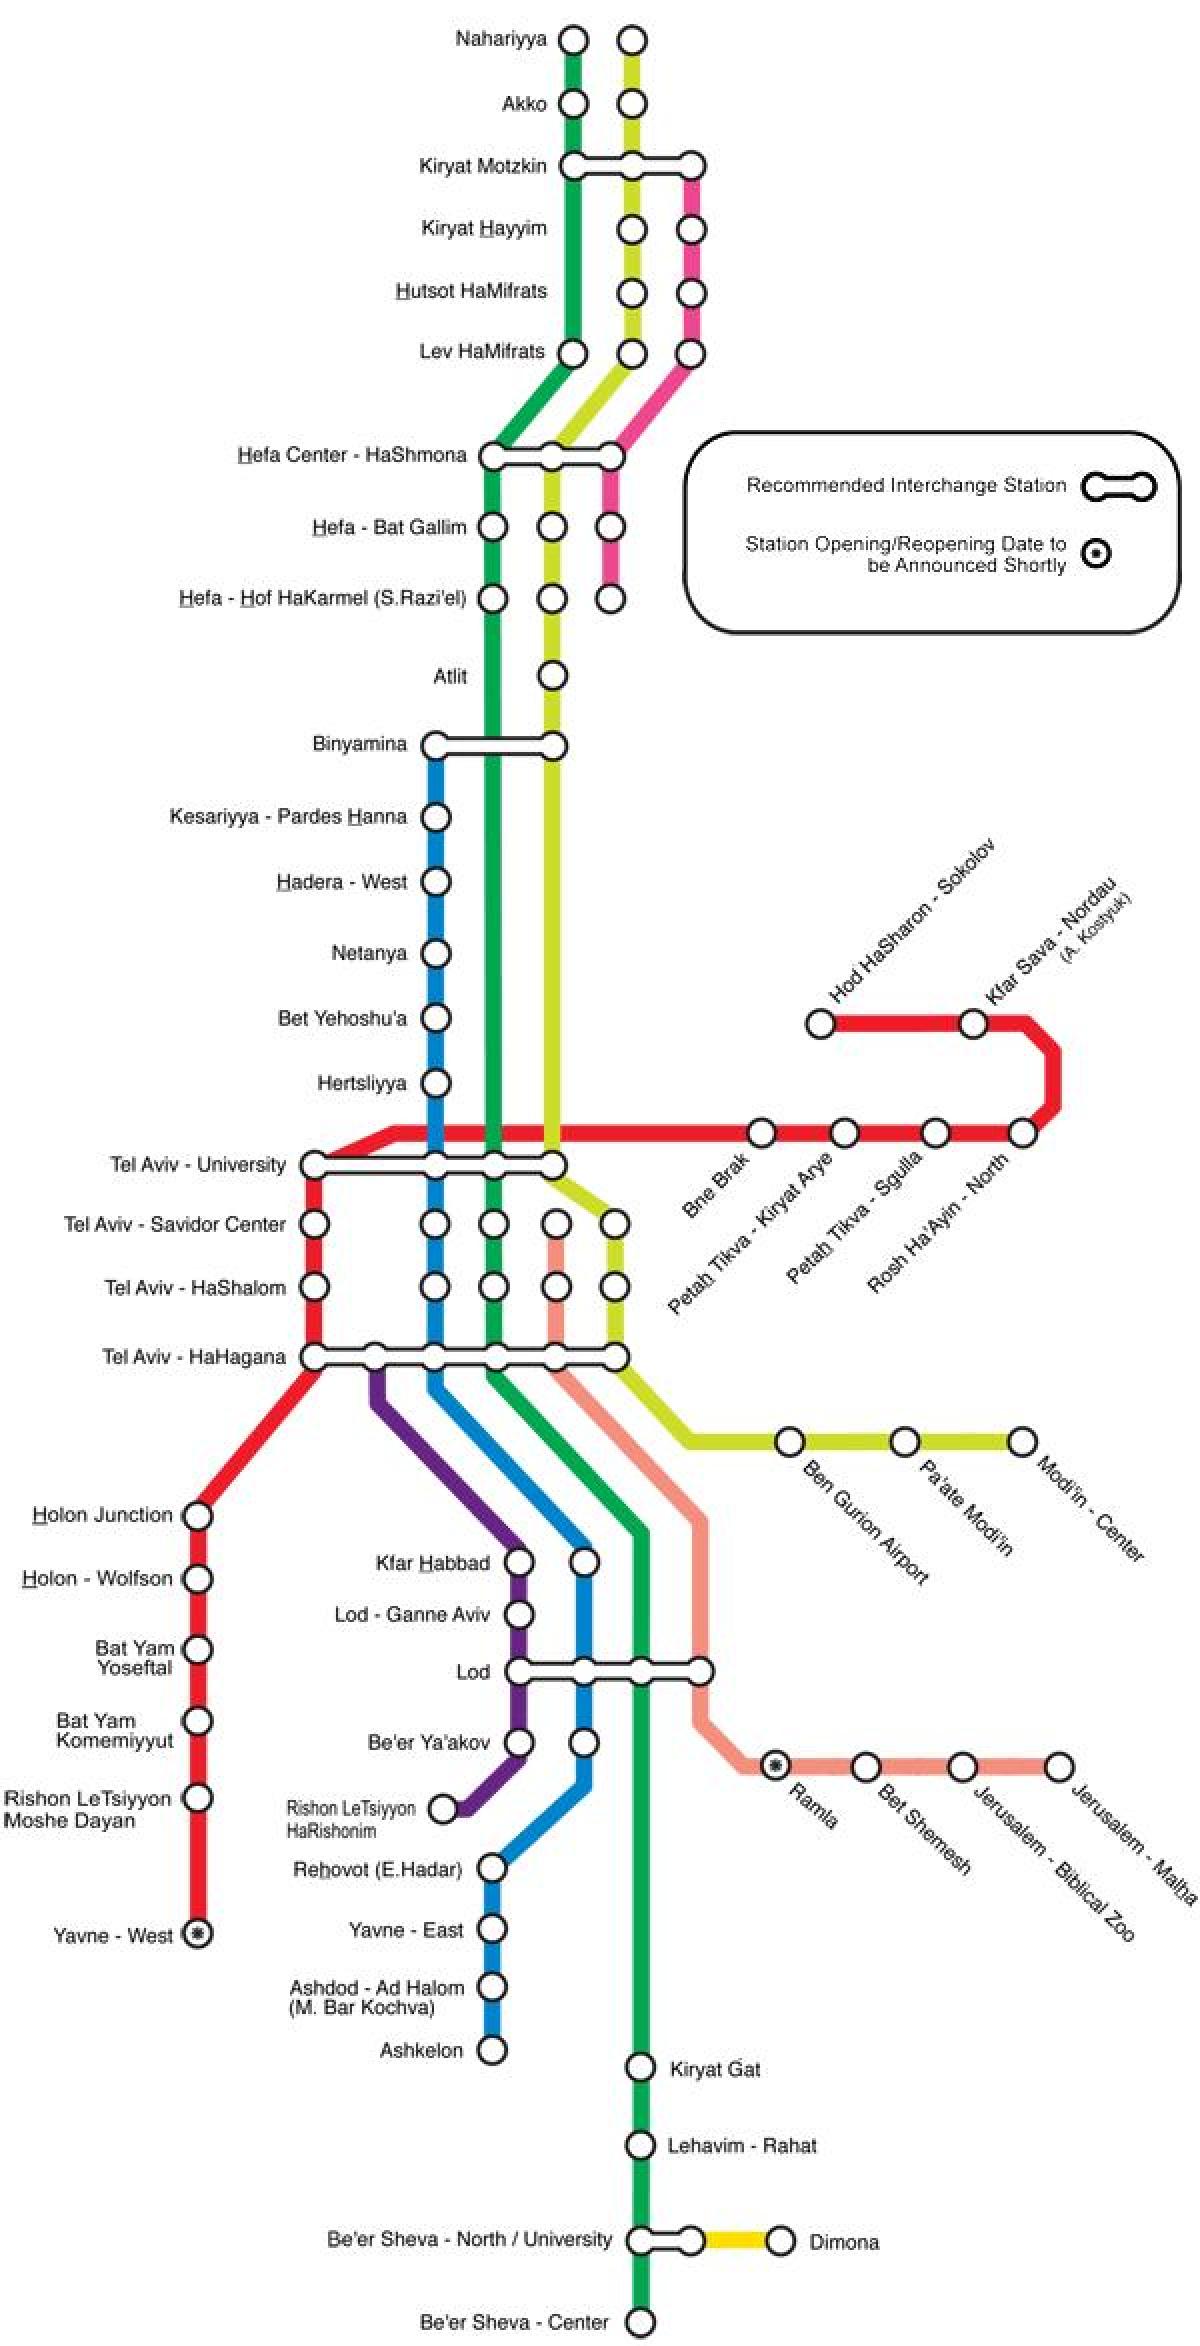 तेल अवीव के रेलवे स्टेशन का नक्शा